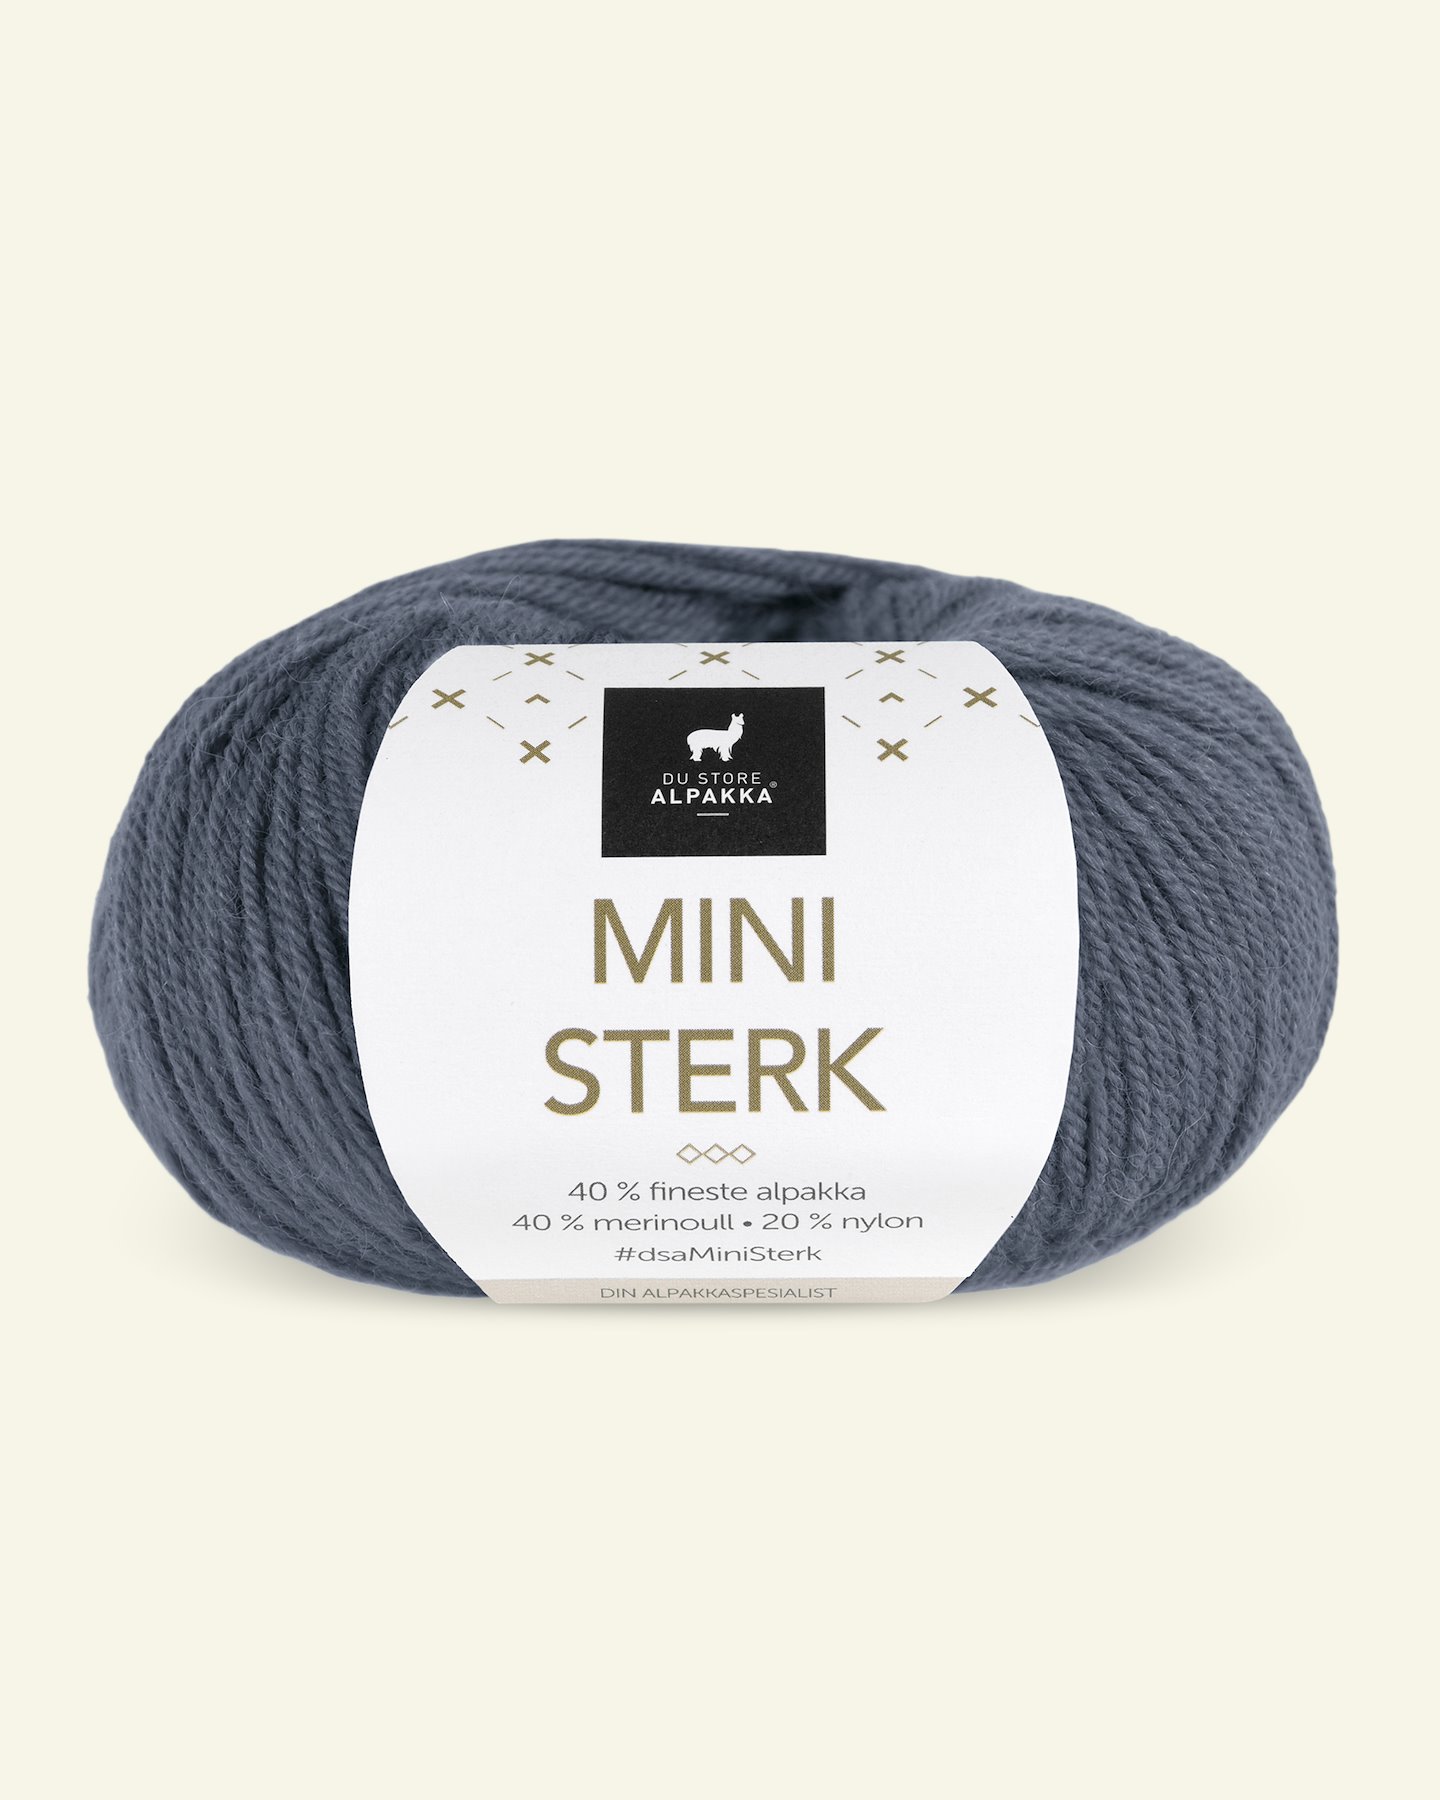 Du Store Alpakka, Alpaka merino Mischgarn "Mini Sterk", graublau (861) 90000642_pack